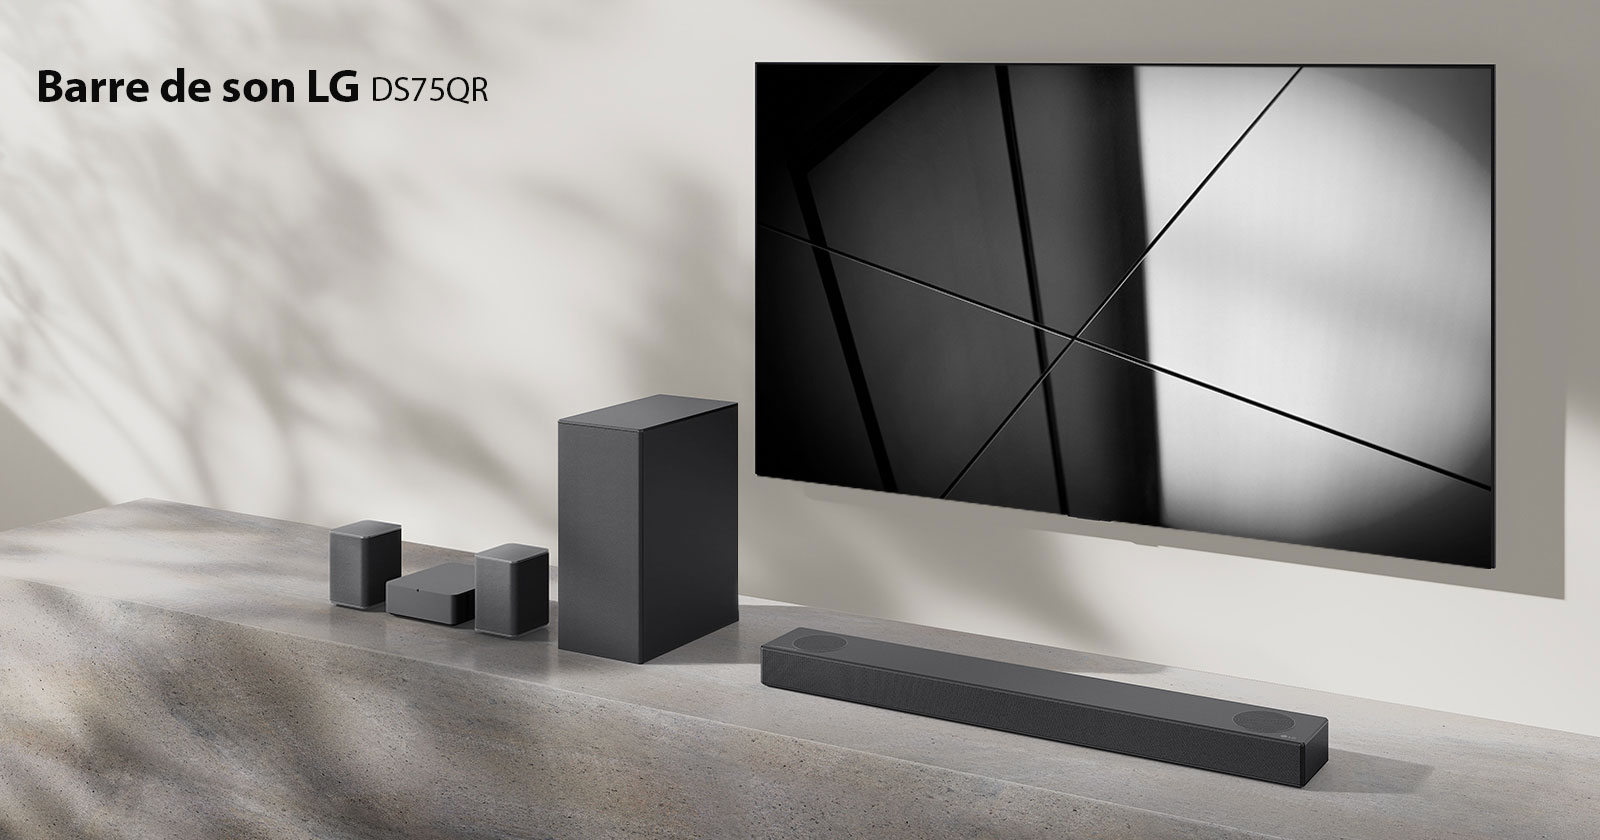 La barre de son DS75QR de LG et le téléviseur LG sont placés ensemble dans le salon. Le téléviseur est allumé et projette une image en noir et blanc.